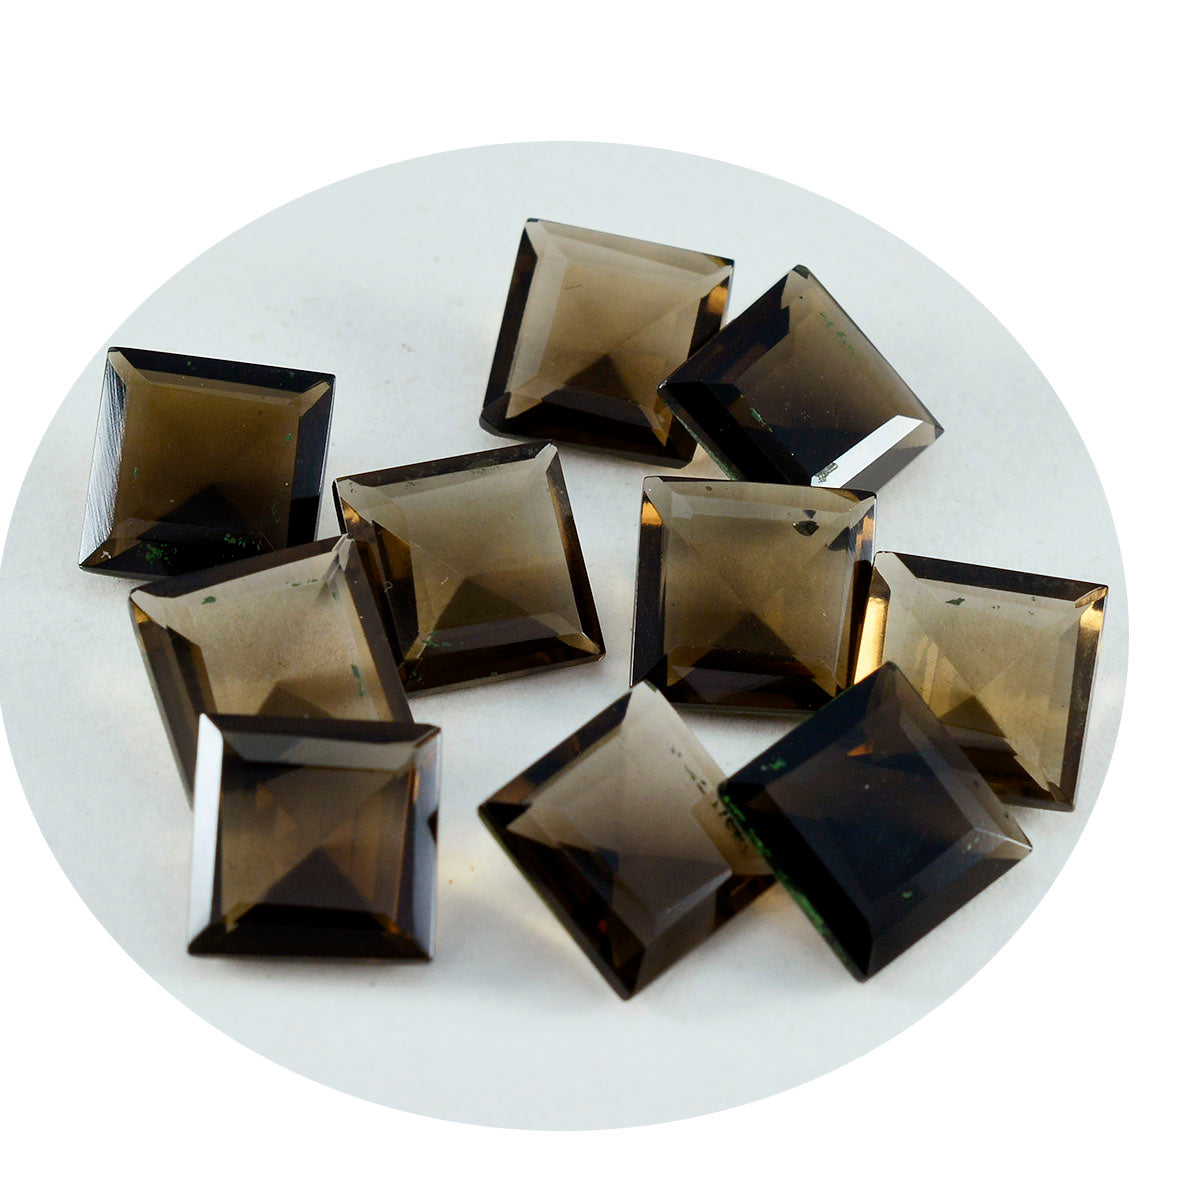 riyogems 1 шт. настоящий коричневый дымчатый кварц граненый 8x8 мм квадратной формы замечательный качественный свободный камень